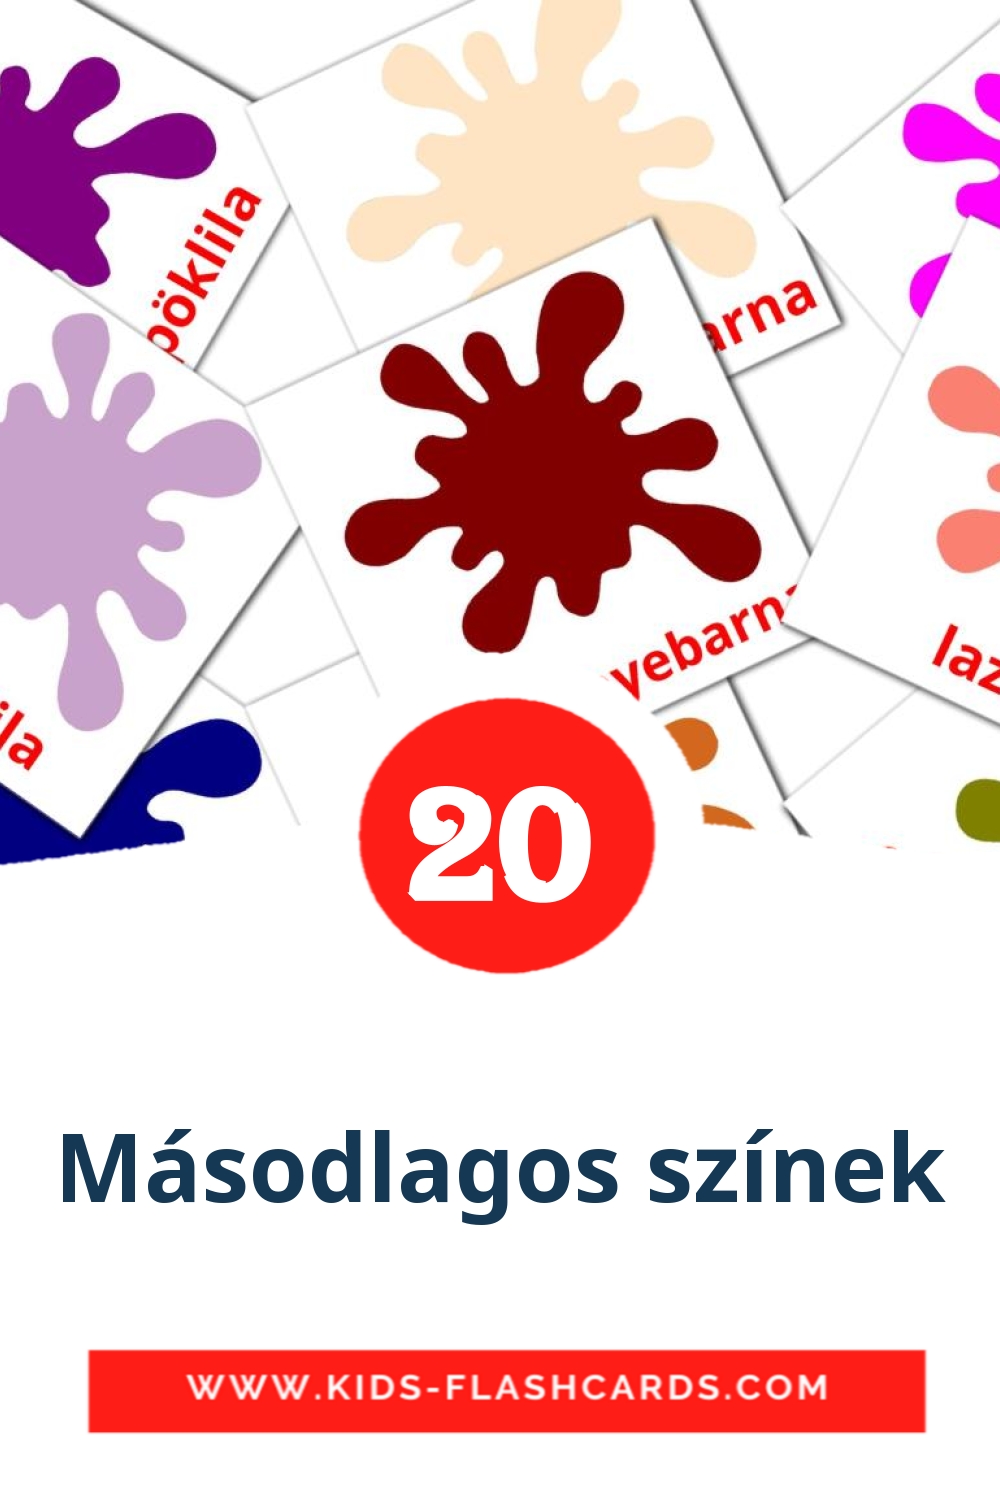 20 tarjetas didacticas de Másodlagos színek para el jardín de infancia en húngaro